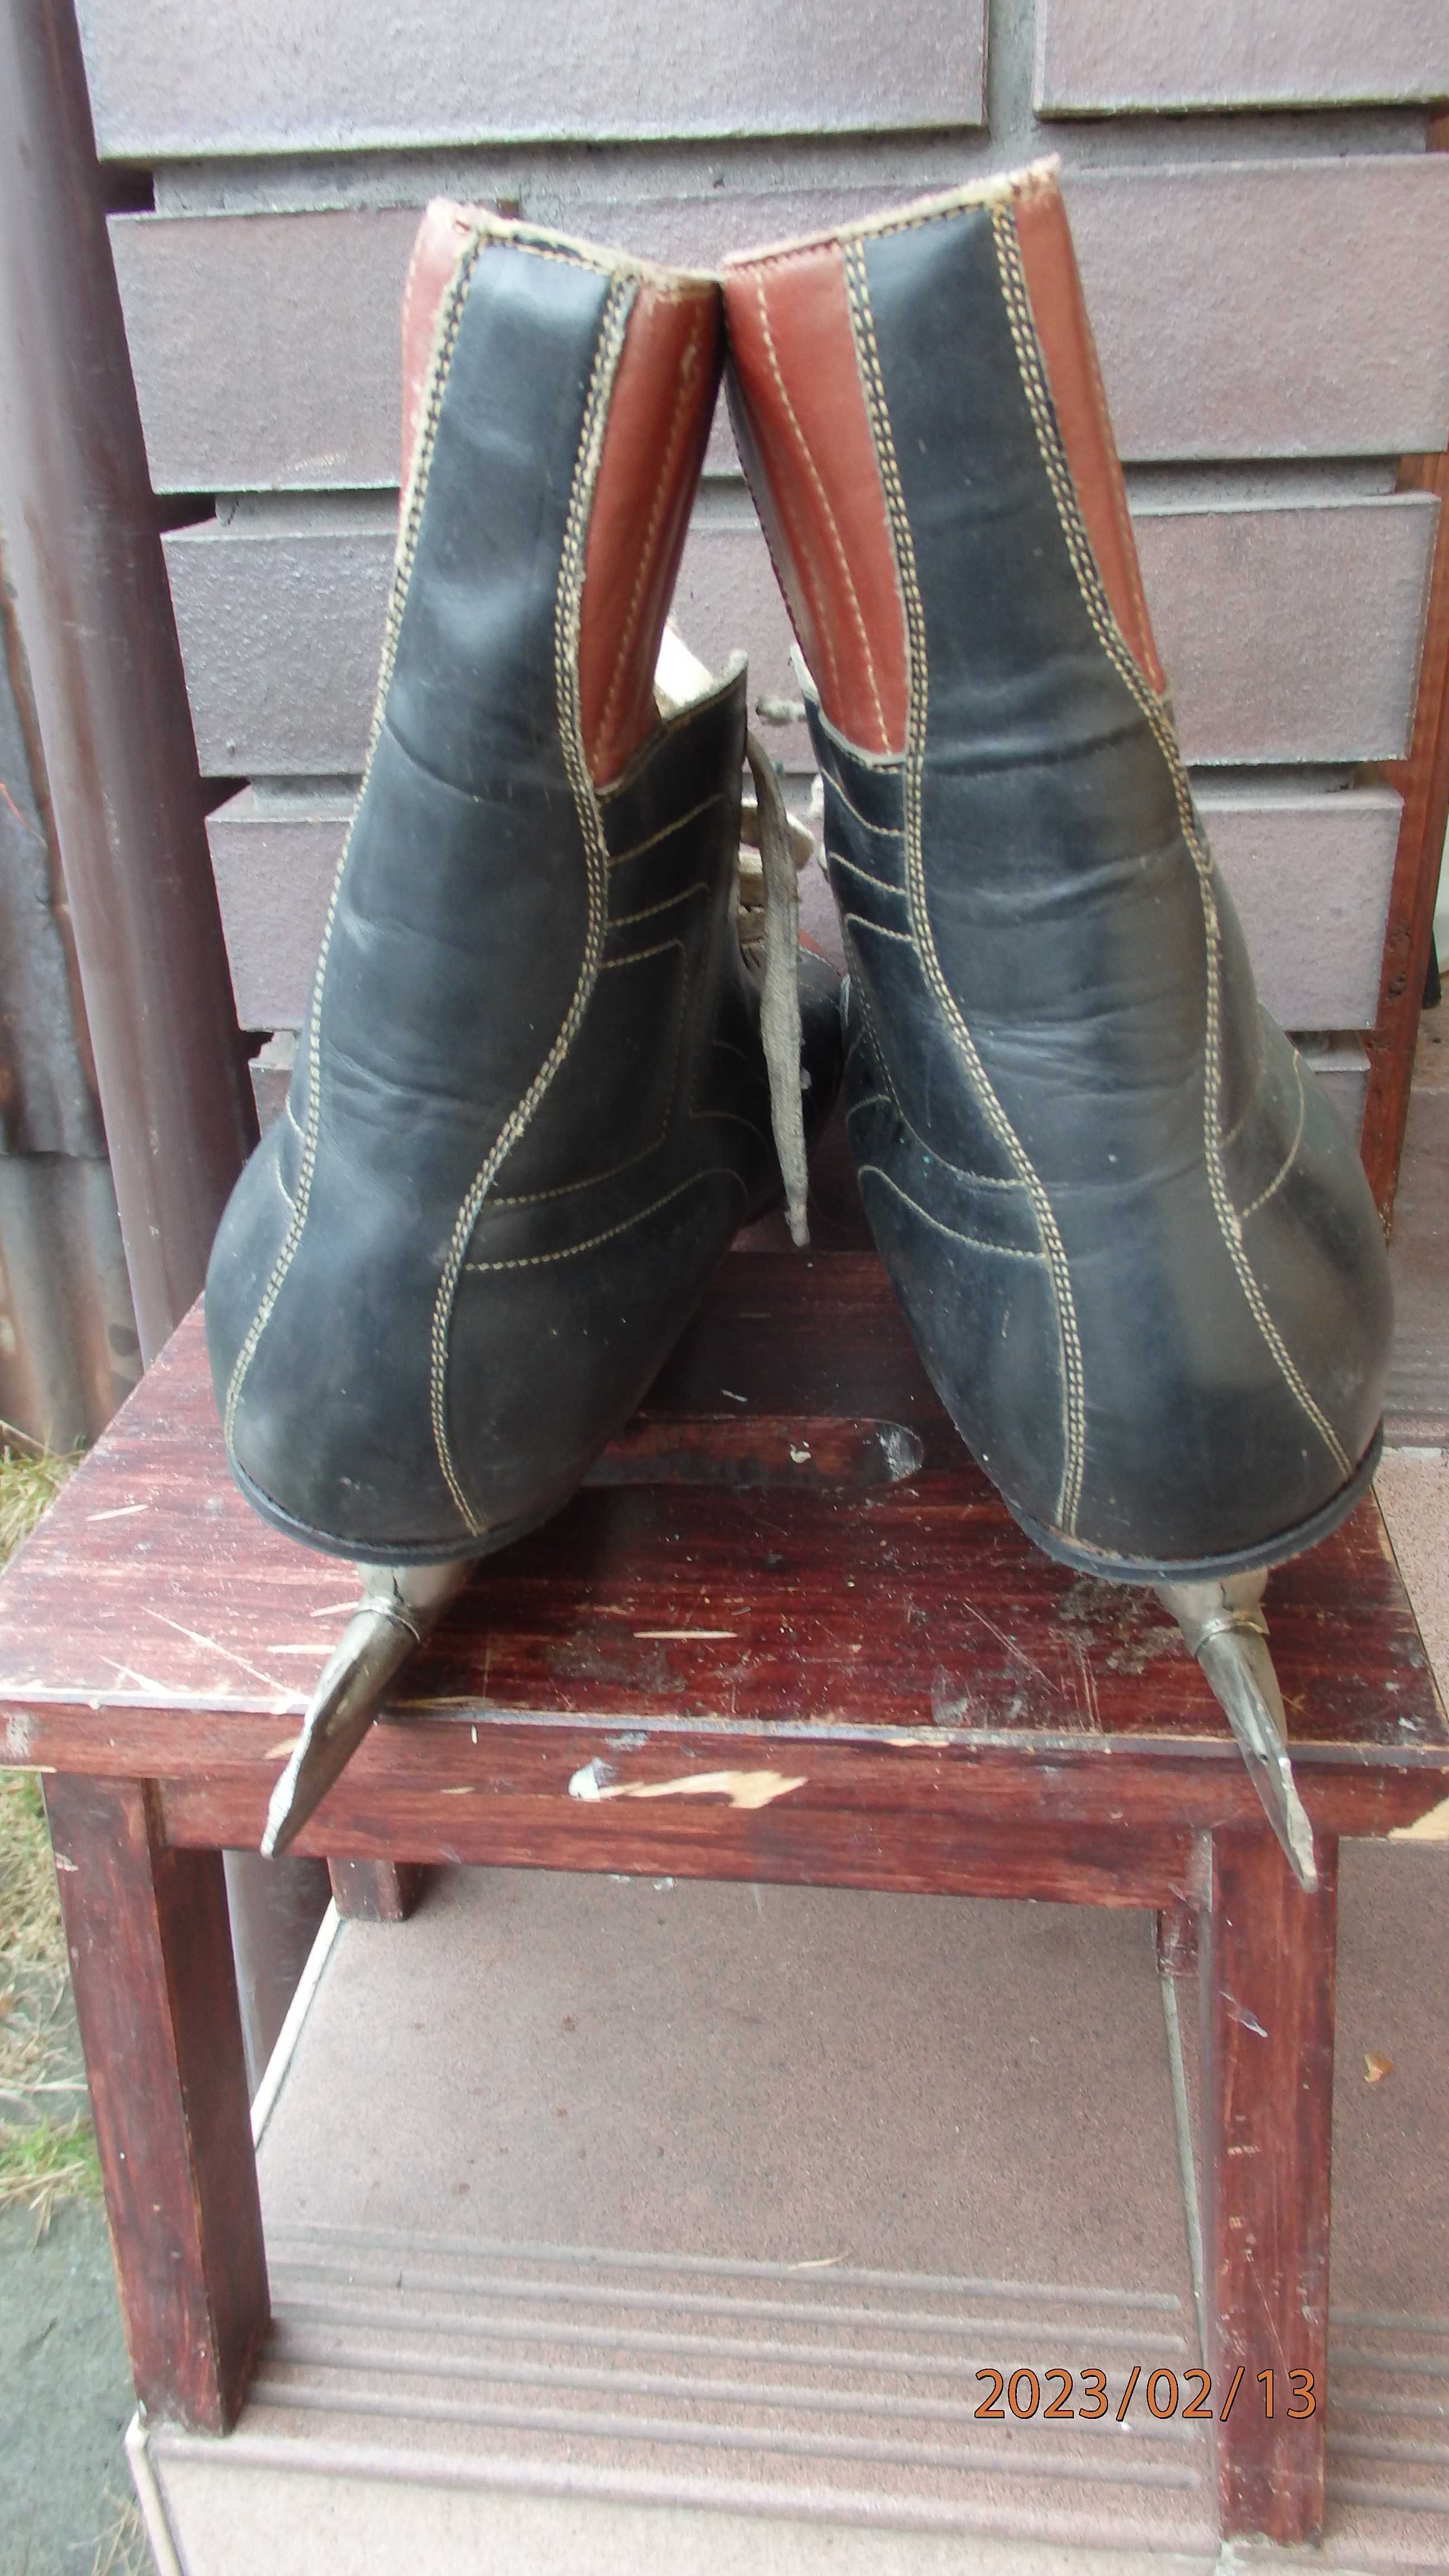 Buty z łyżwami - Fabos Krosno oryginalne ze skóry. Rozmiar 42.